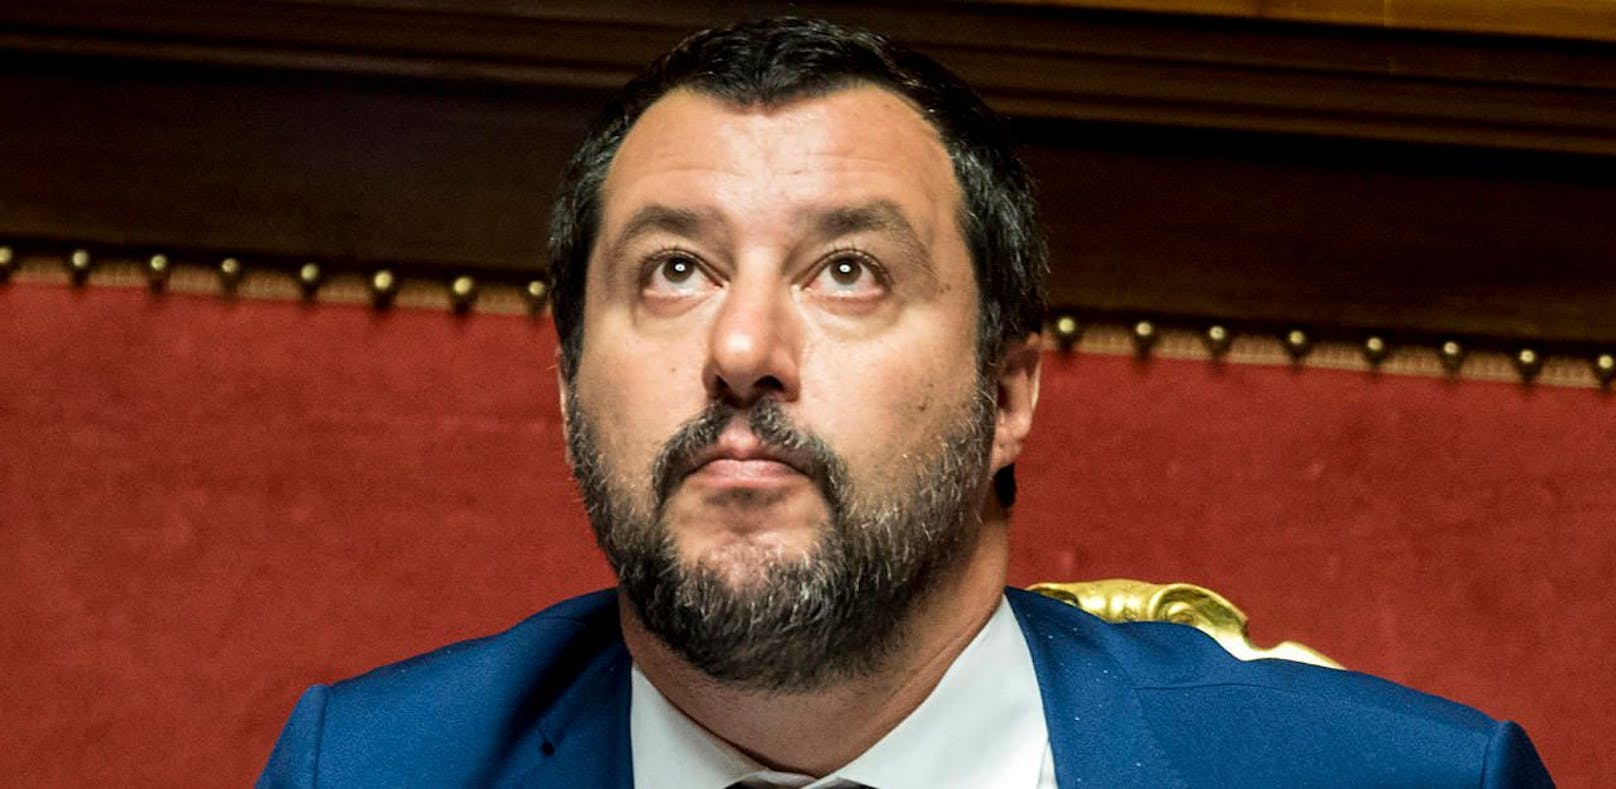 Matteo Salvini, Innenminister und Chef der Lega Nord, bei einer Sitzung des Senats in Rom